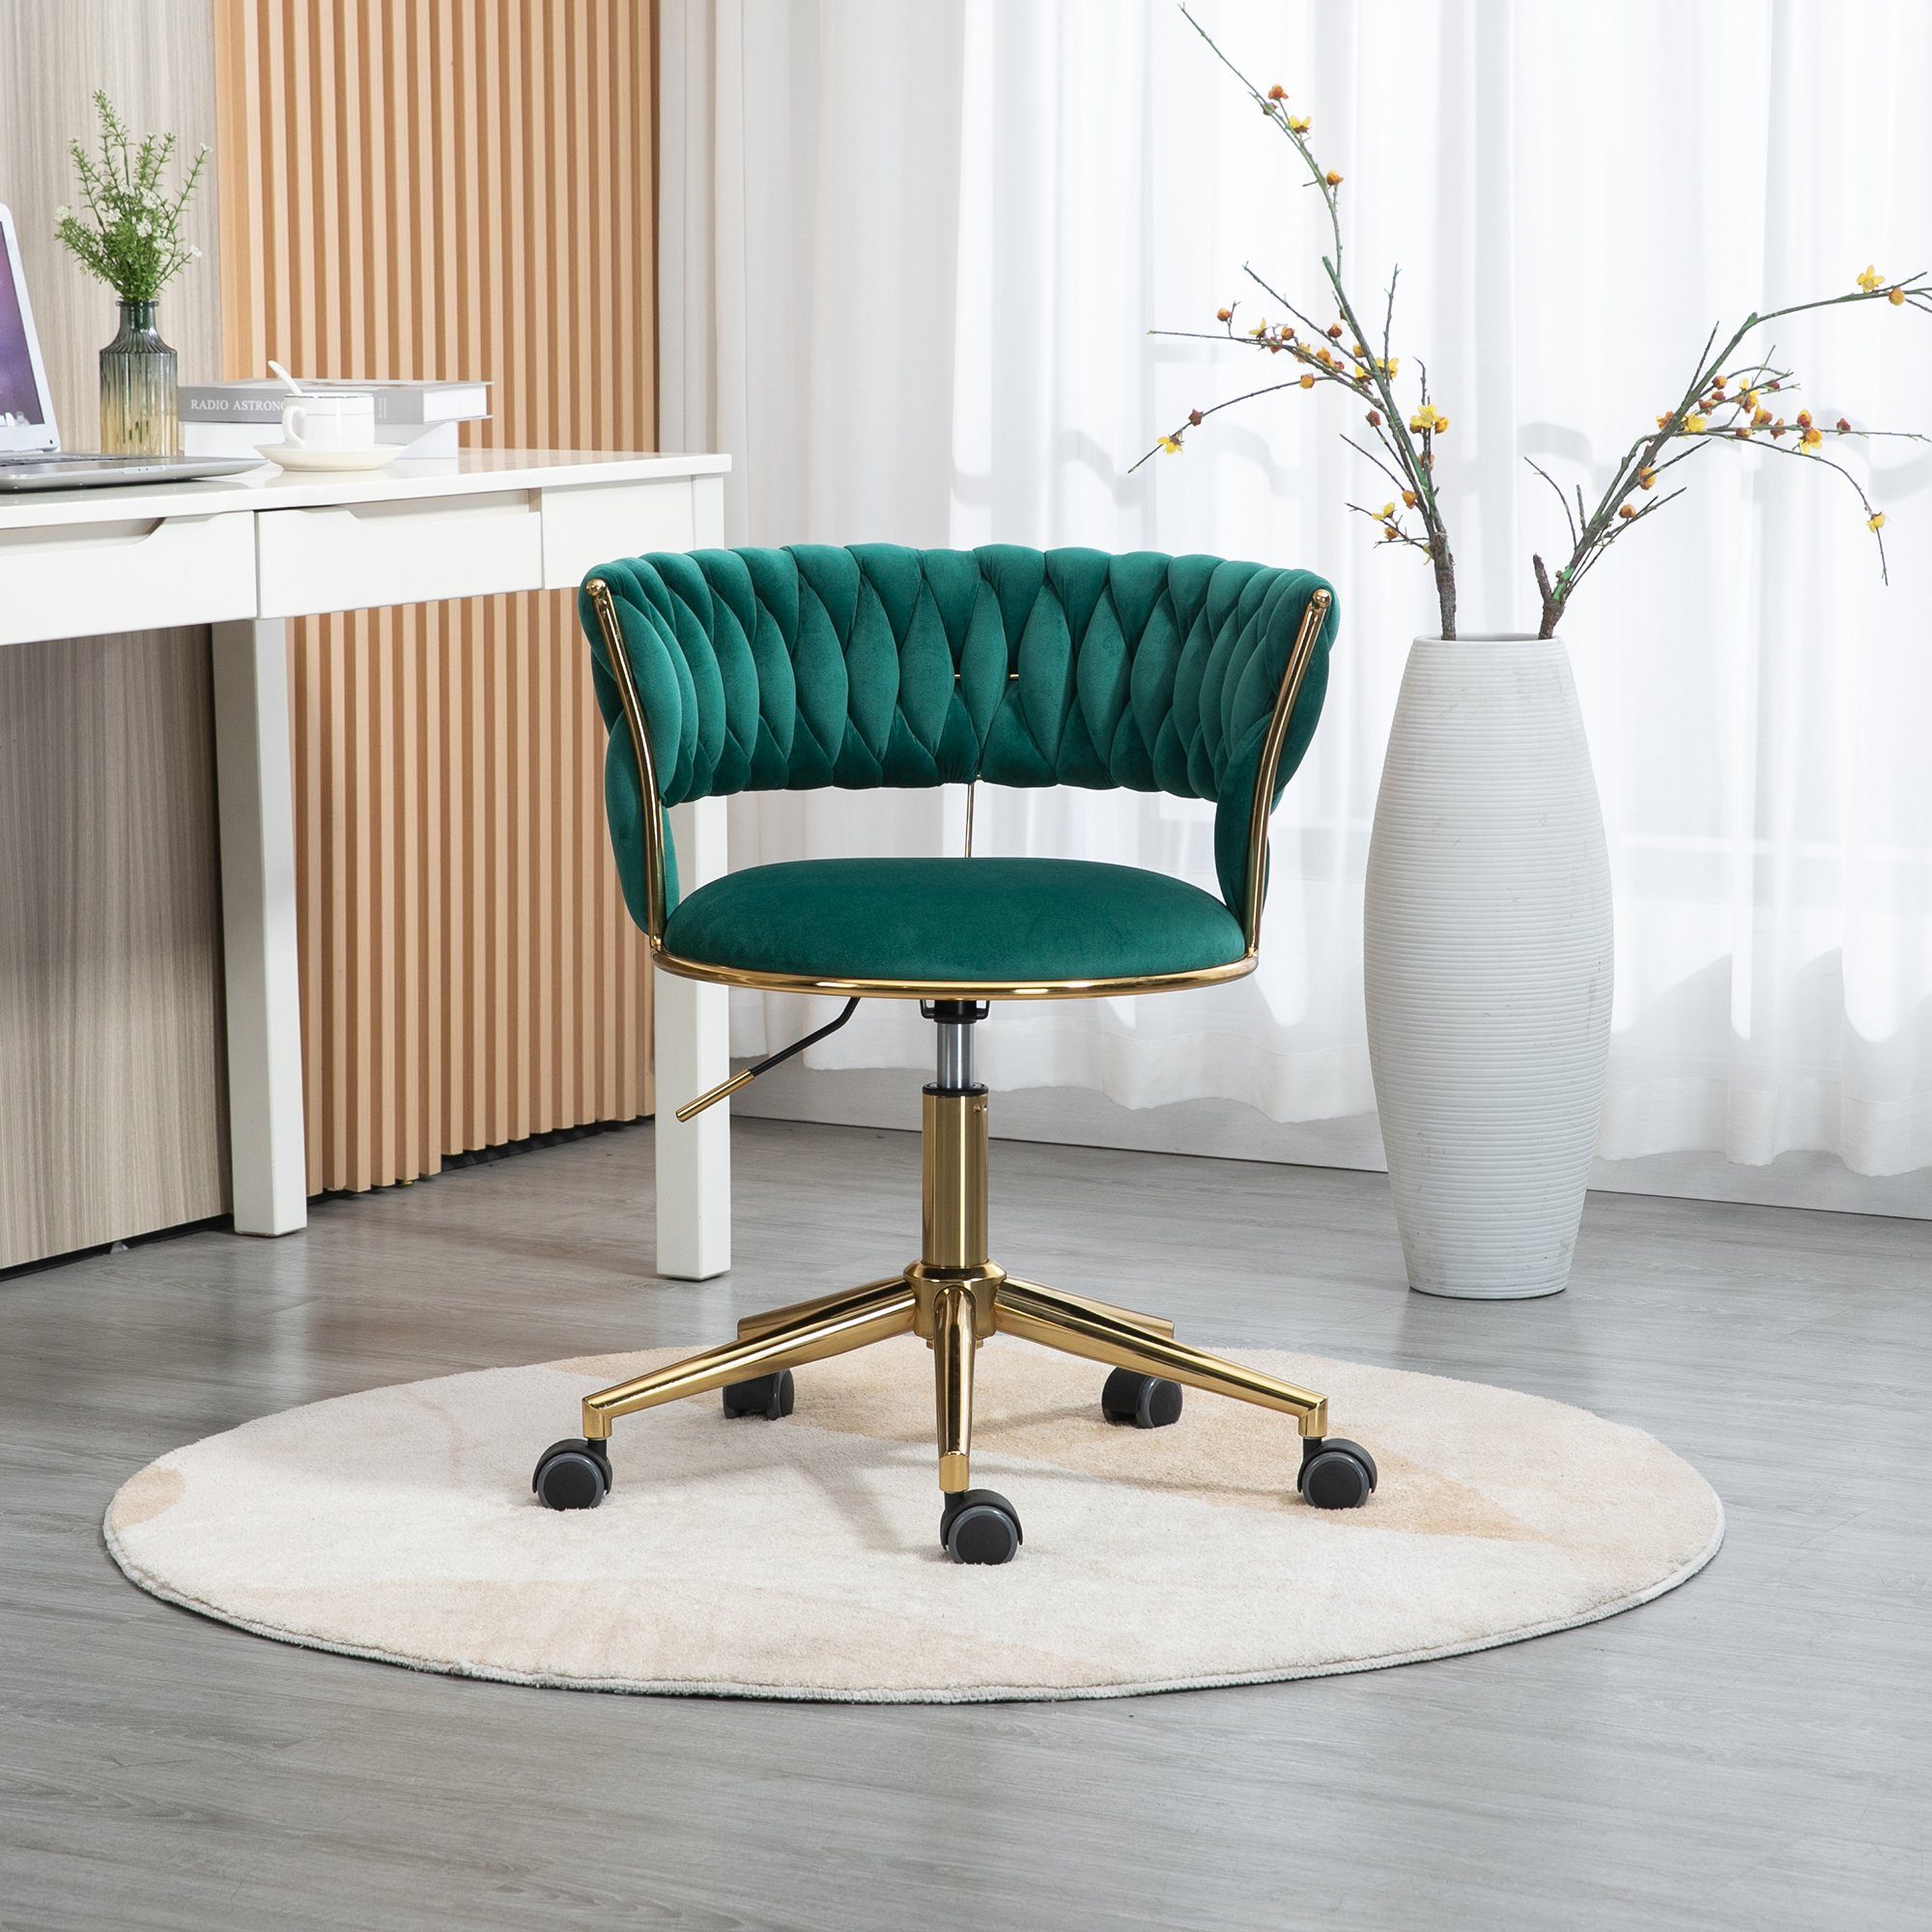 Drehstuhl mehrfarbig Bürostuhl Beine goldene Freizeit Make-up Grün 360° drehbar Samt Odikalo